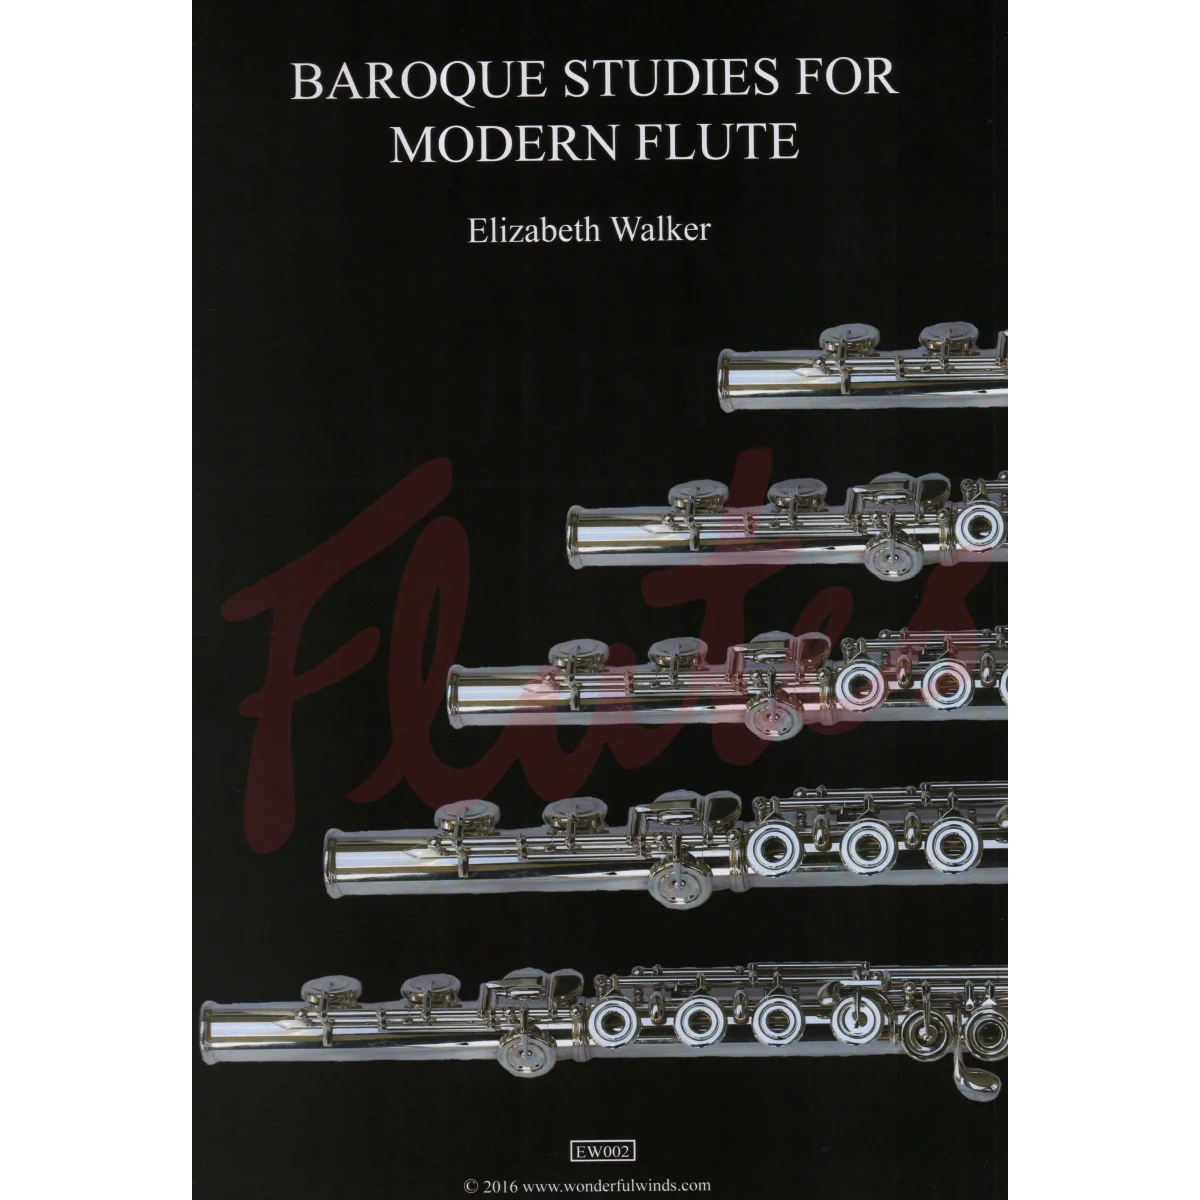 Baroque Studies for Modern Flute